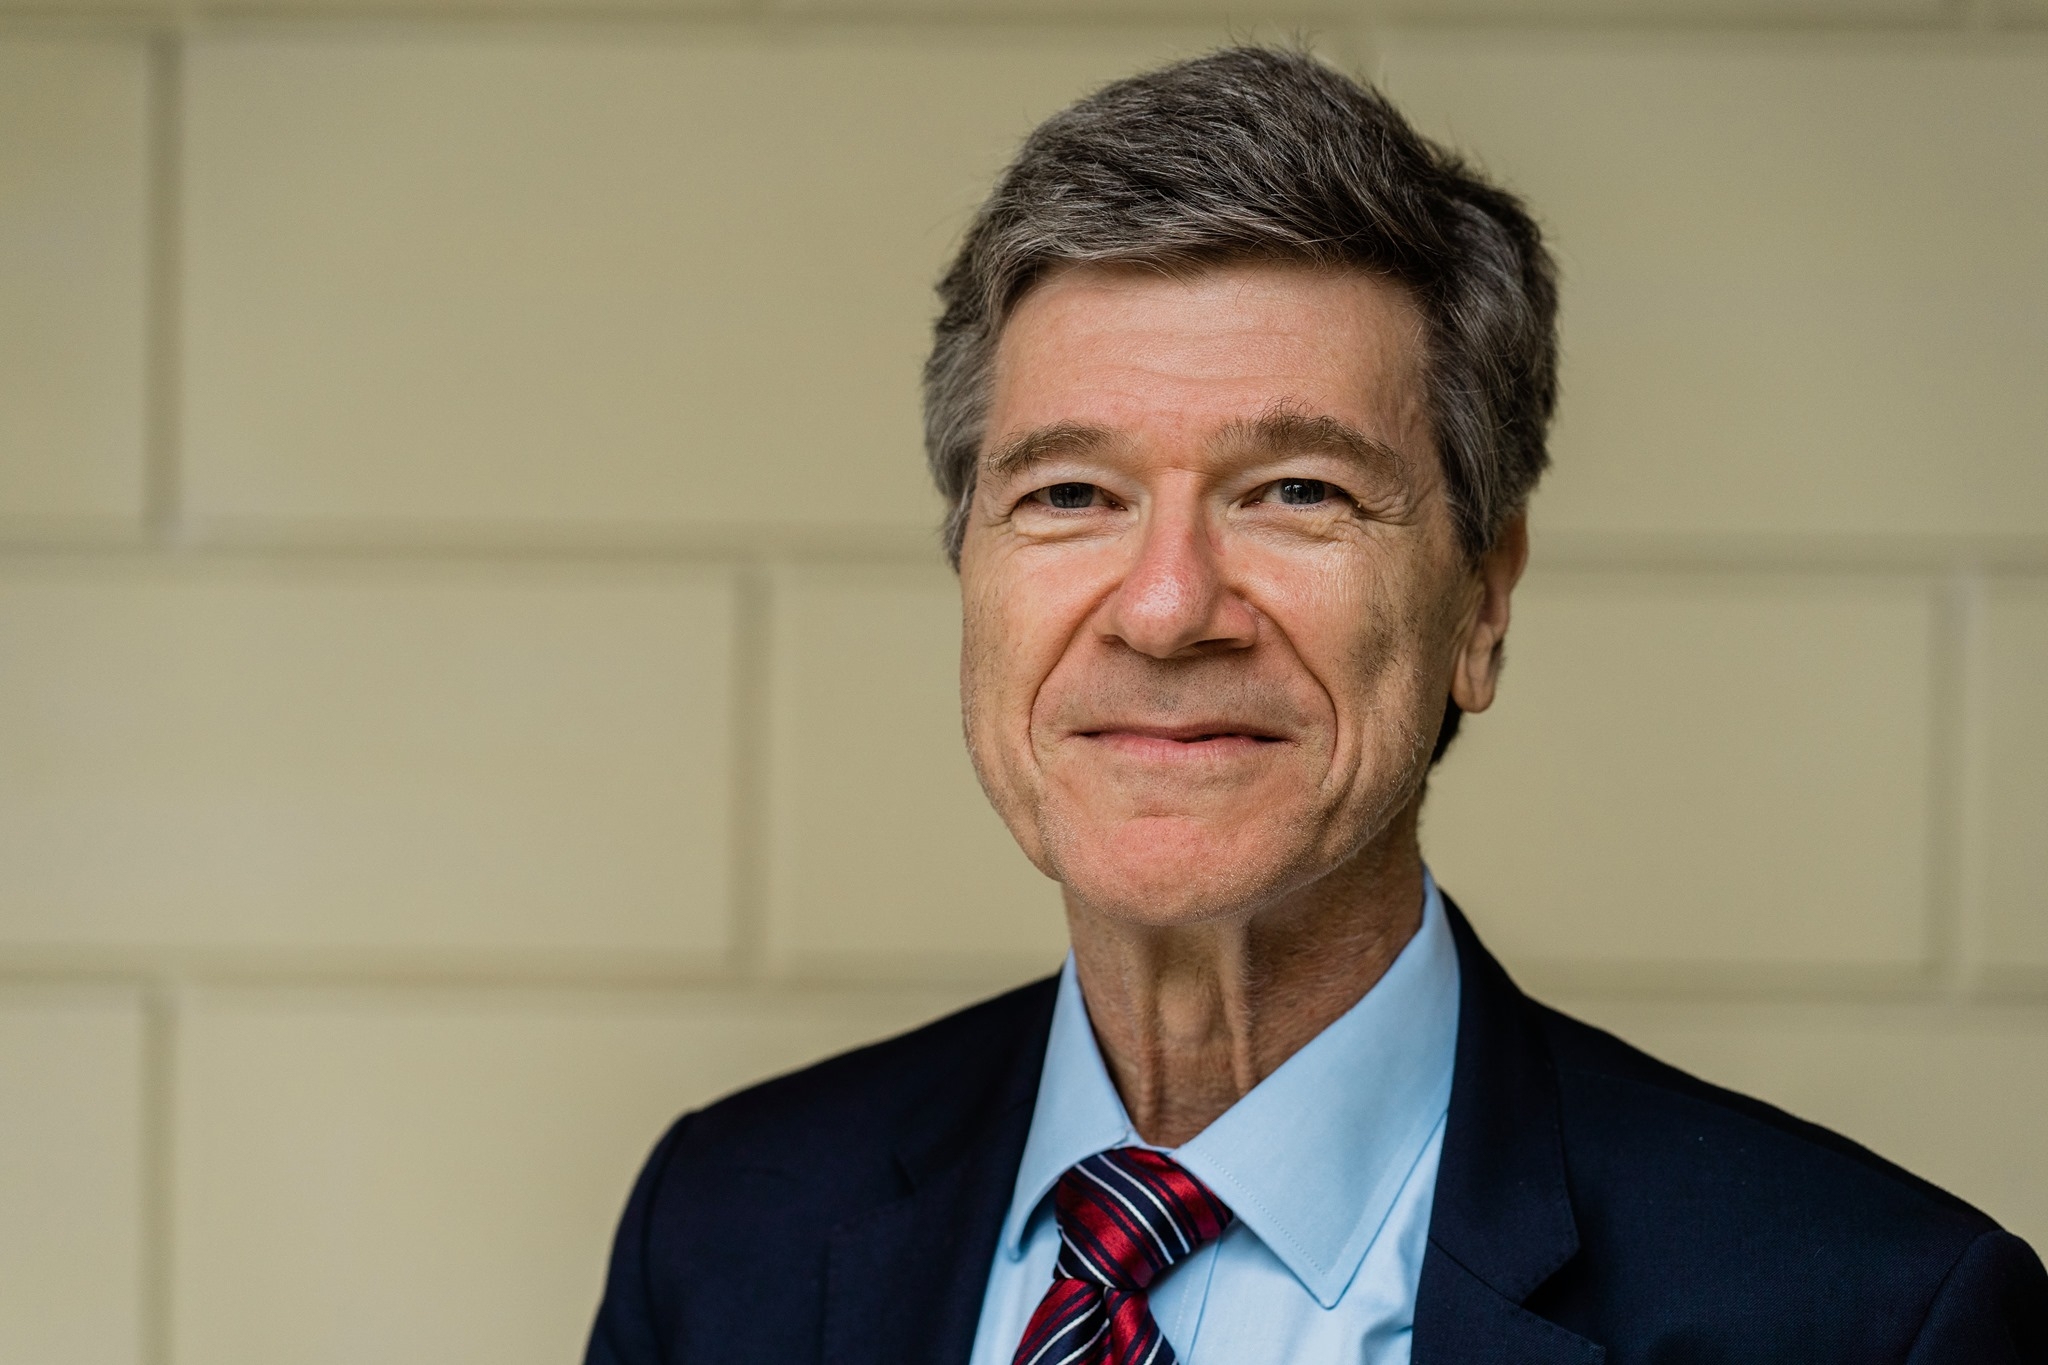 Exklusives Interview: Basisdemokratien werden sich durchsetzen, sagt Jeffrey Sachs